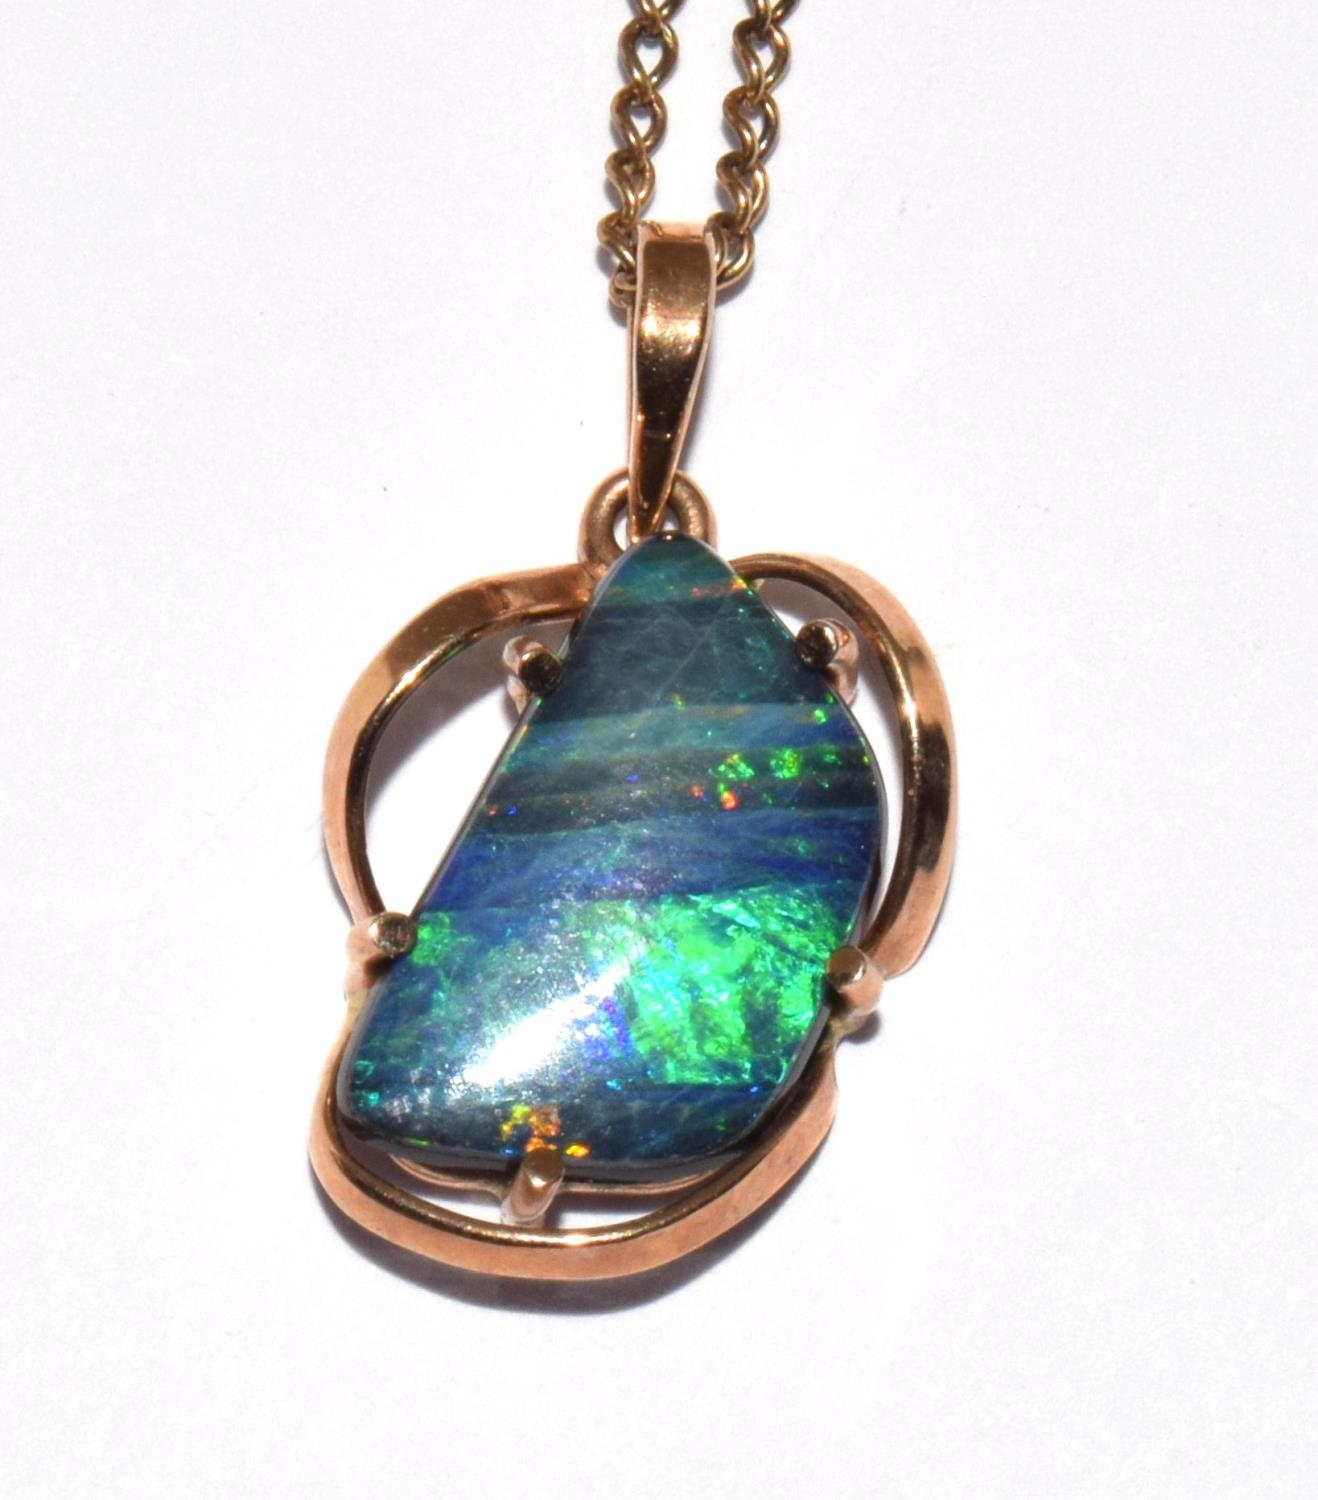 9ct gold Boulder Opal necklace pendant chain 54cm pendant 2.2cm - Image 6 of 6